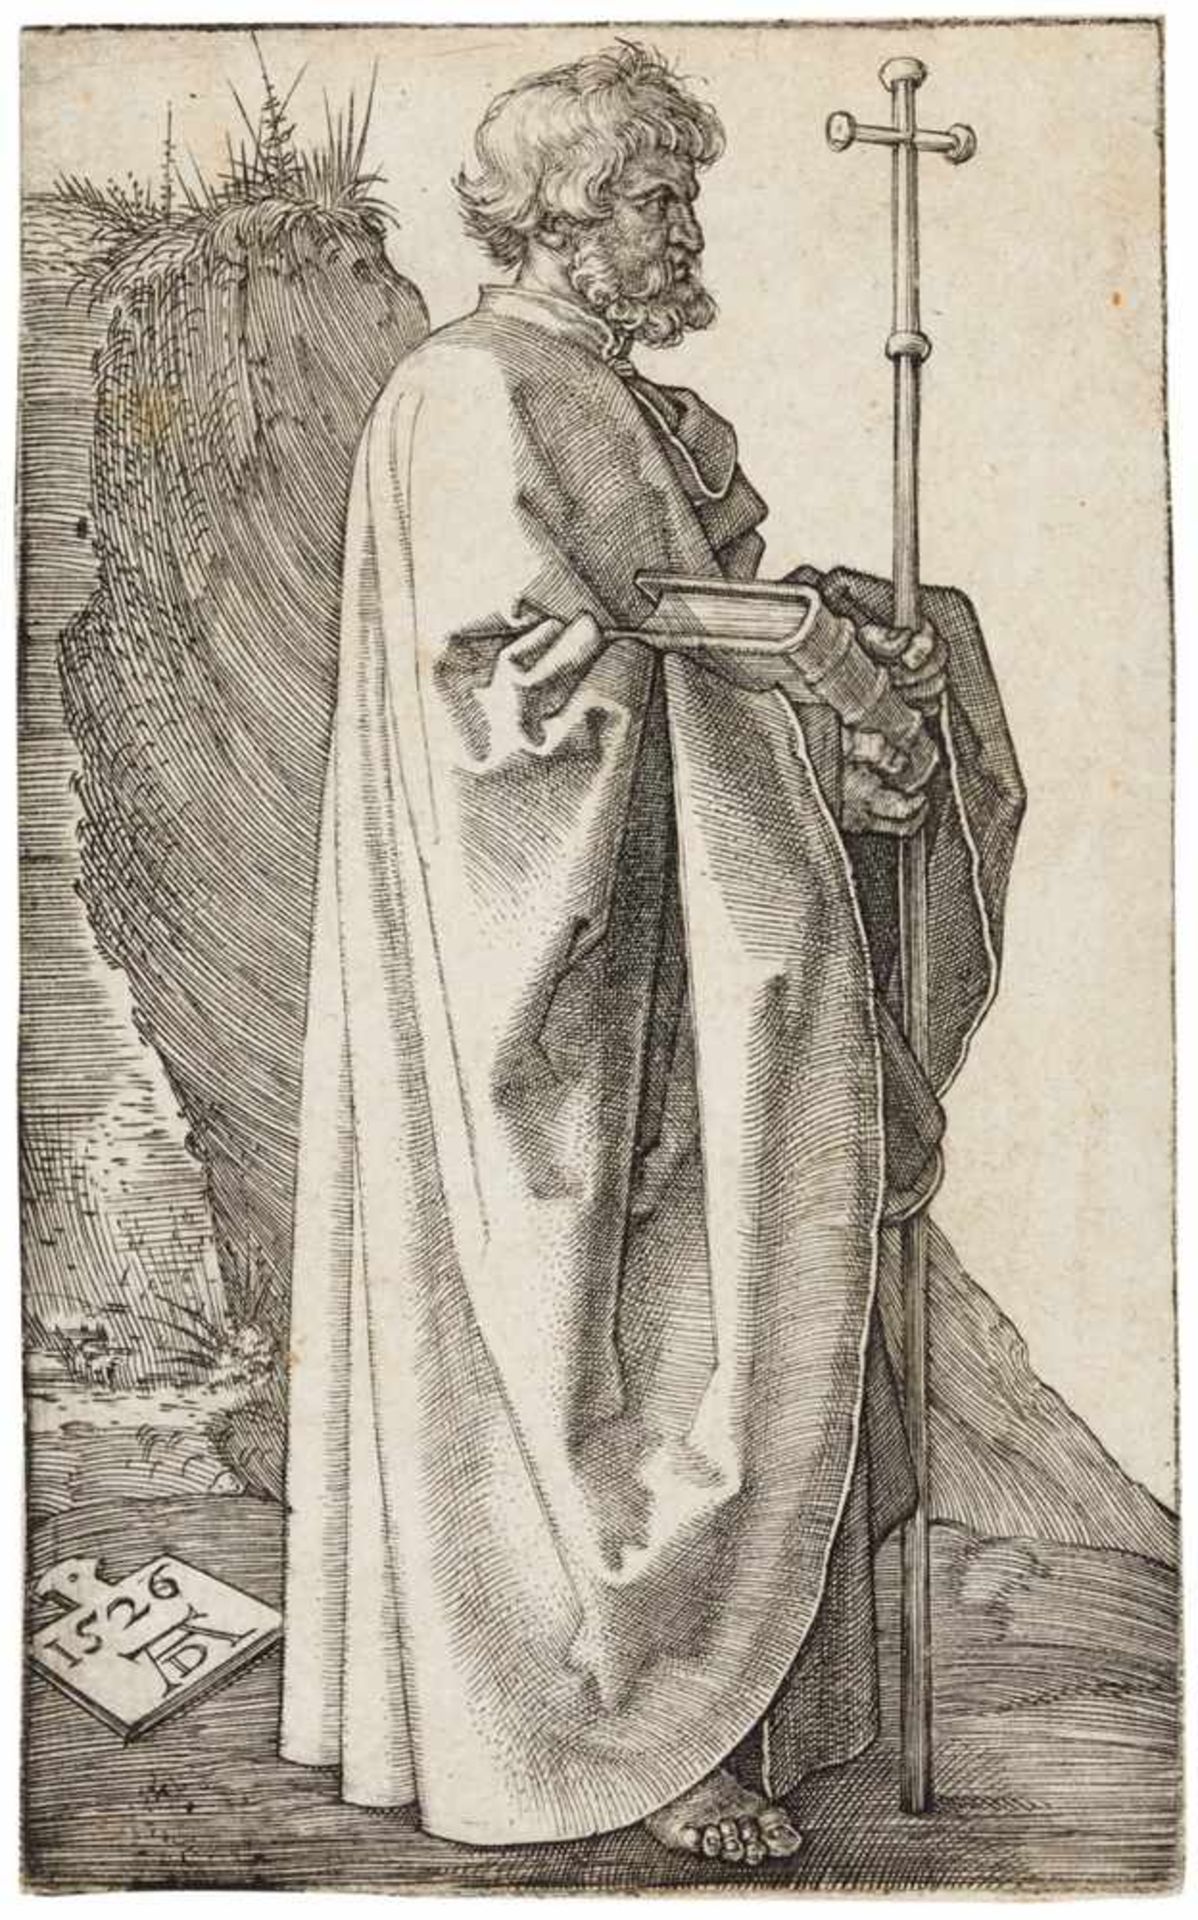 ALBRECHT DÜRER Nürnberg 1471 - 1528 Der Apostel Philippus. 1526. Kupferstich auf Bütten.